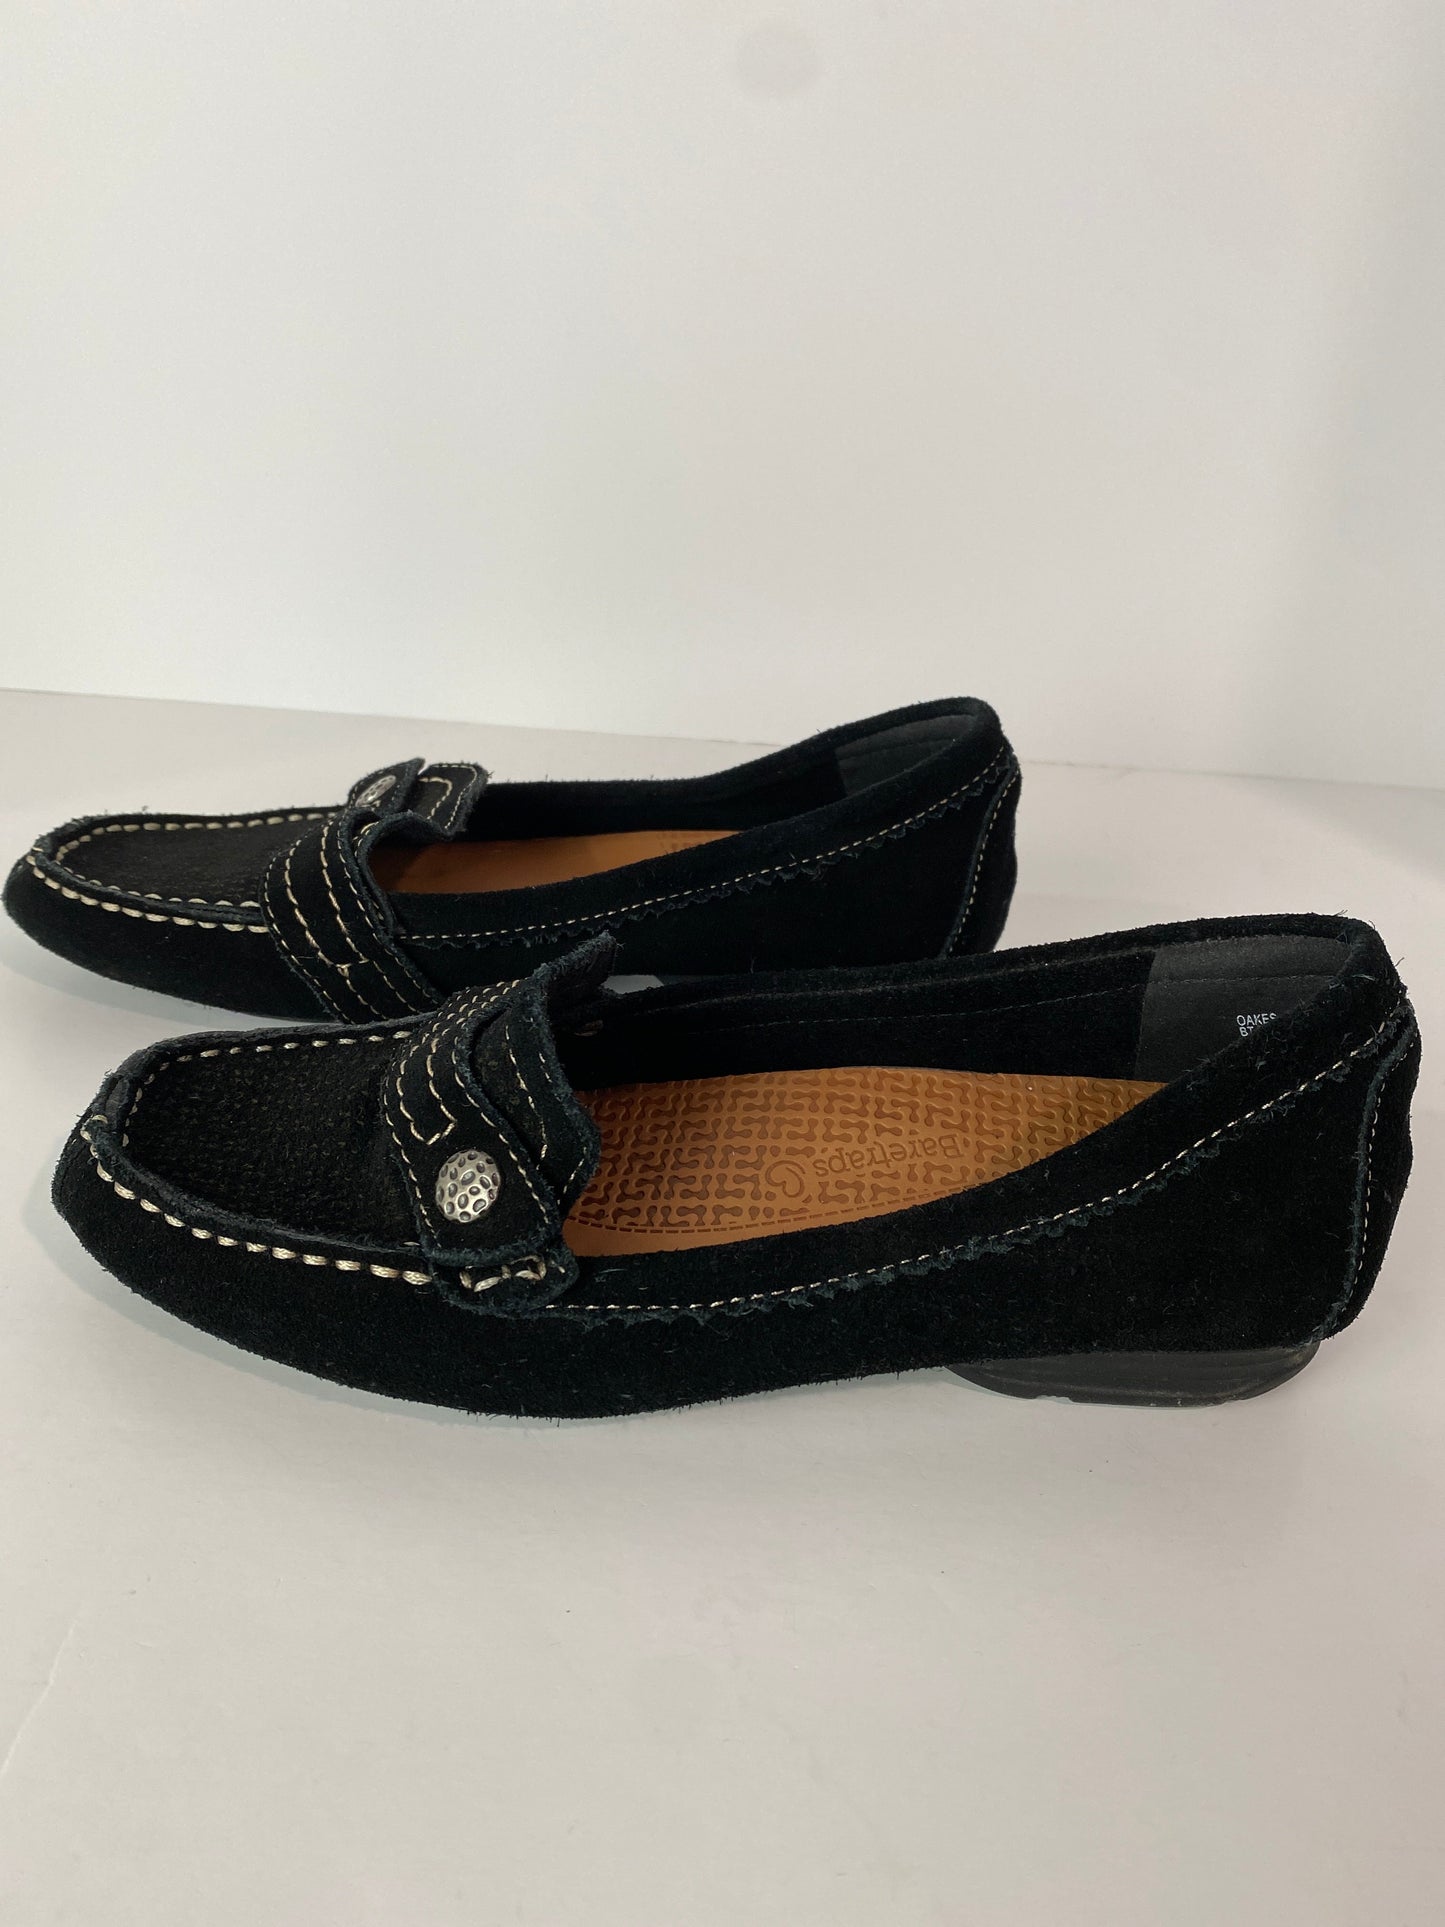 Black Shoes Flats Bare Traps, Size 6